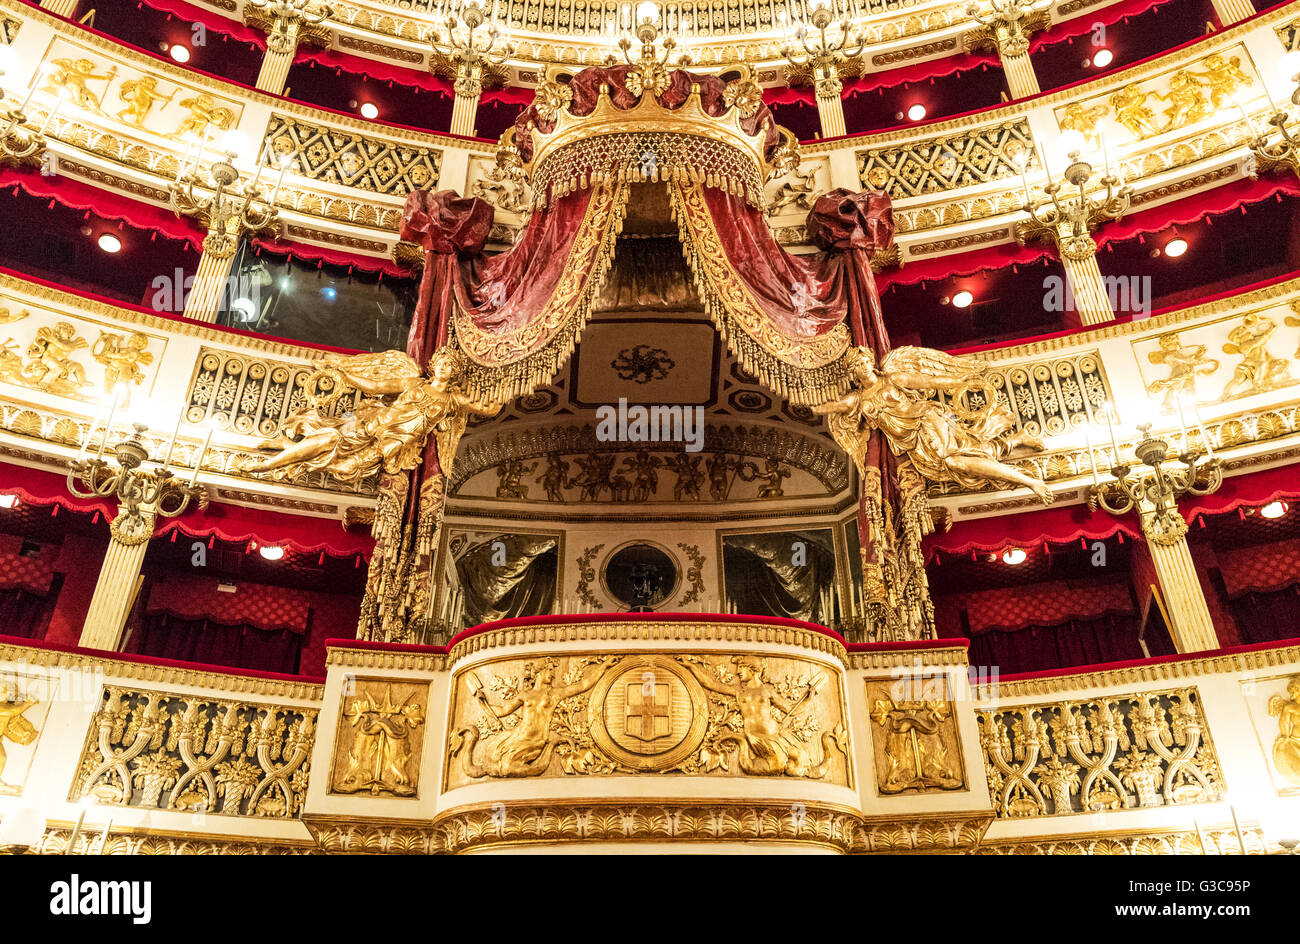 Naples, Italie - 3 août 2015 : Plebiscito, la place royale du théâtre San Carlo Banque D'Images